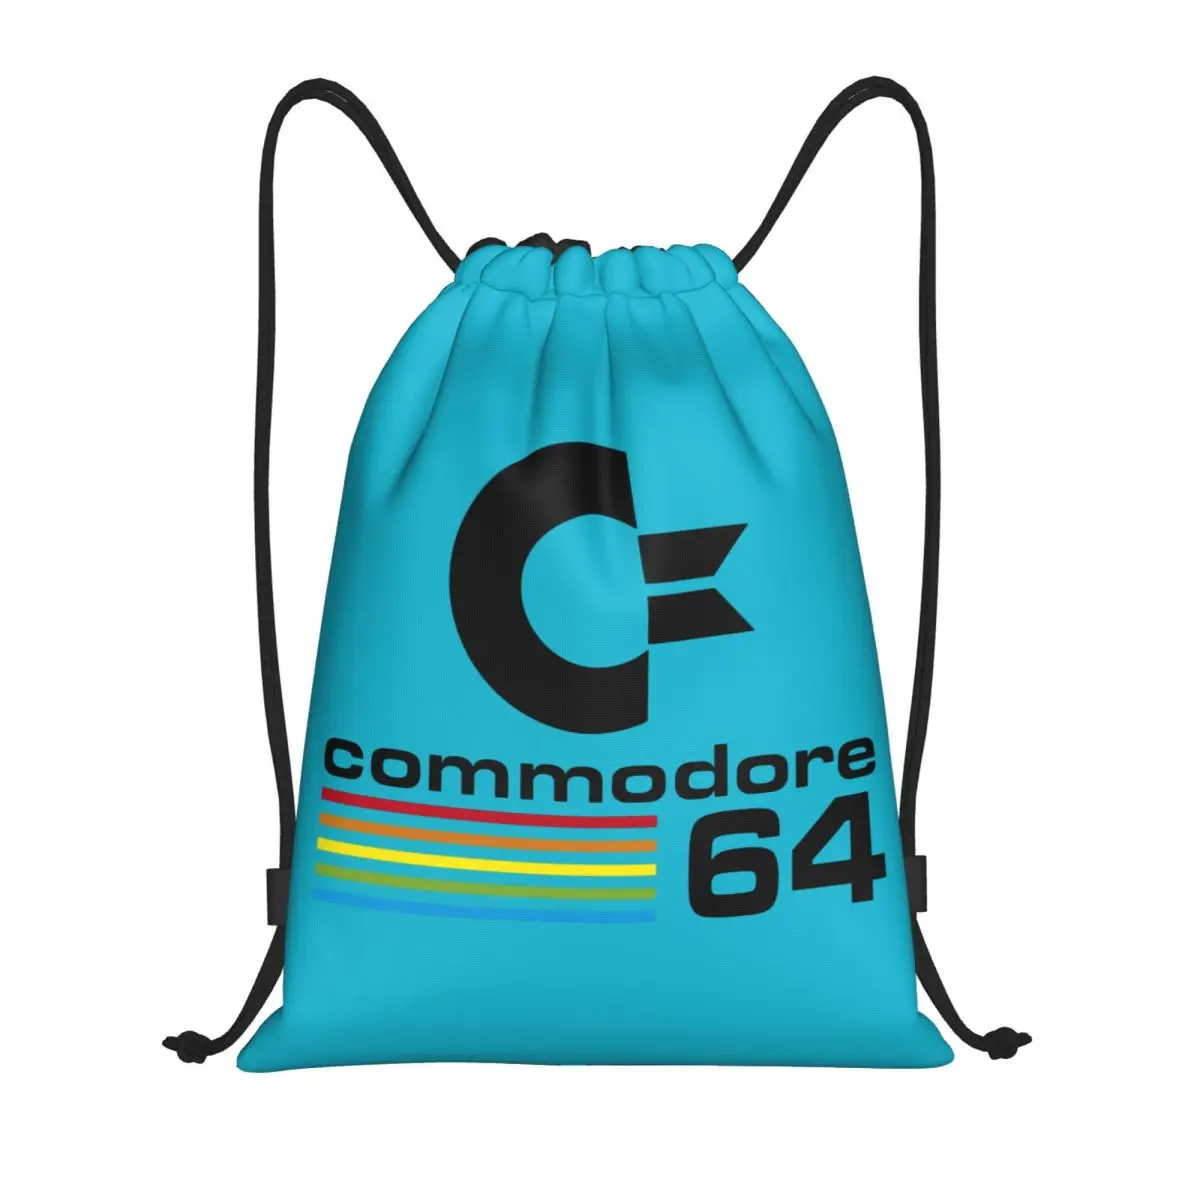 Рюкзак Commodore 64 на шнурке, спортивная спортивная сумка для мужчин и женщин, C64 Amiga, рюкзак для компьютерных тренировок